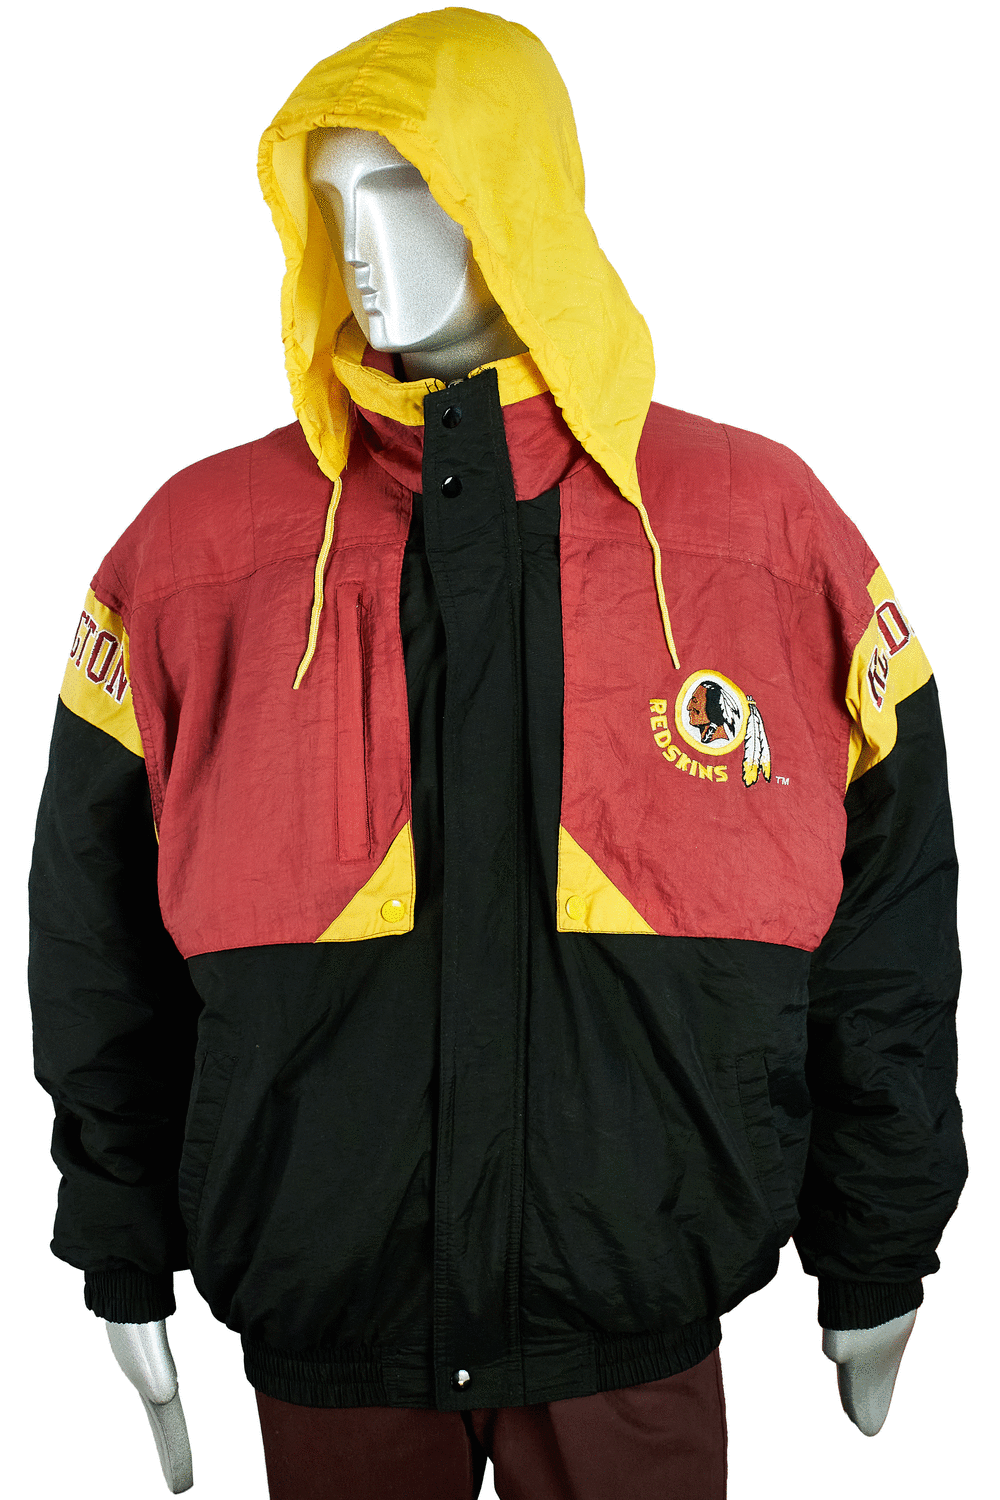 Vintage NFL Washington Redskins Starter Jacket - Red - L – Headlock